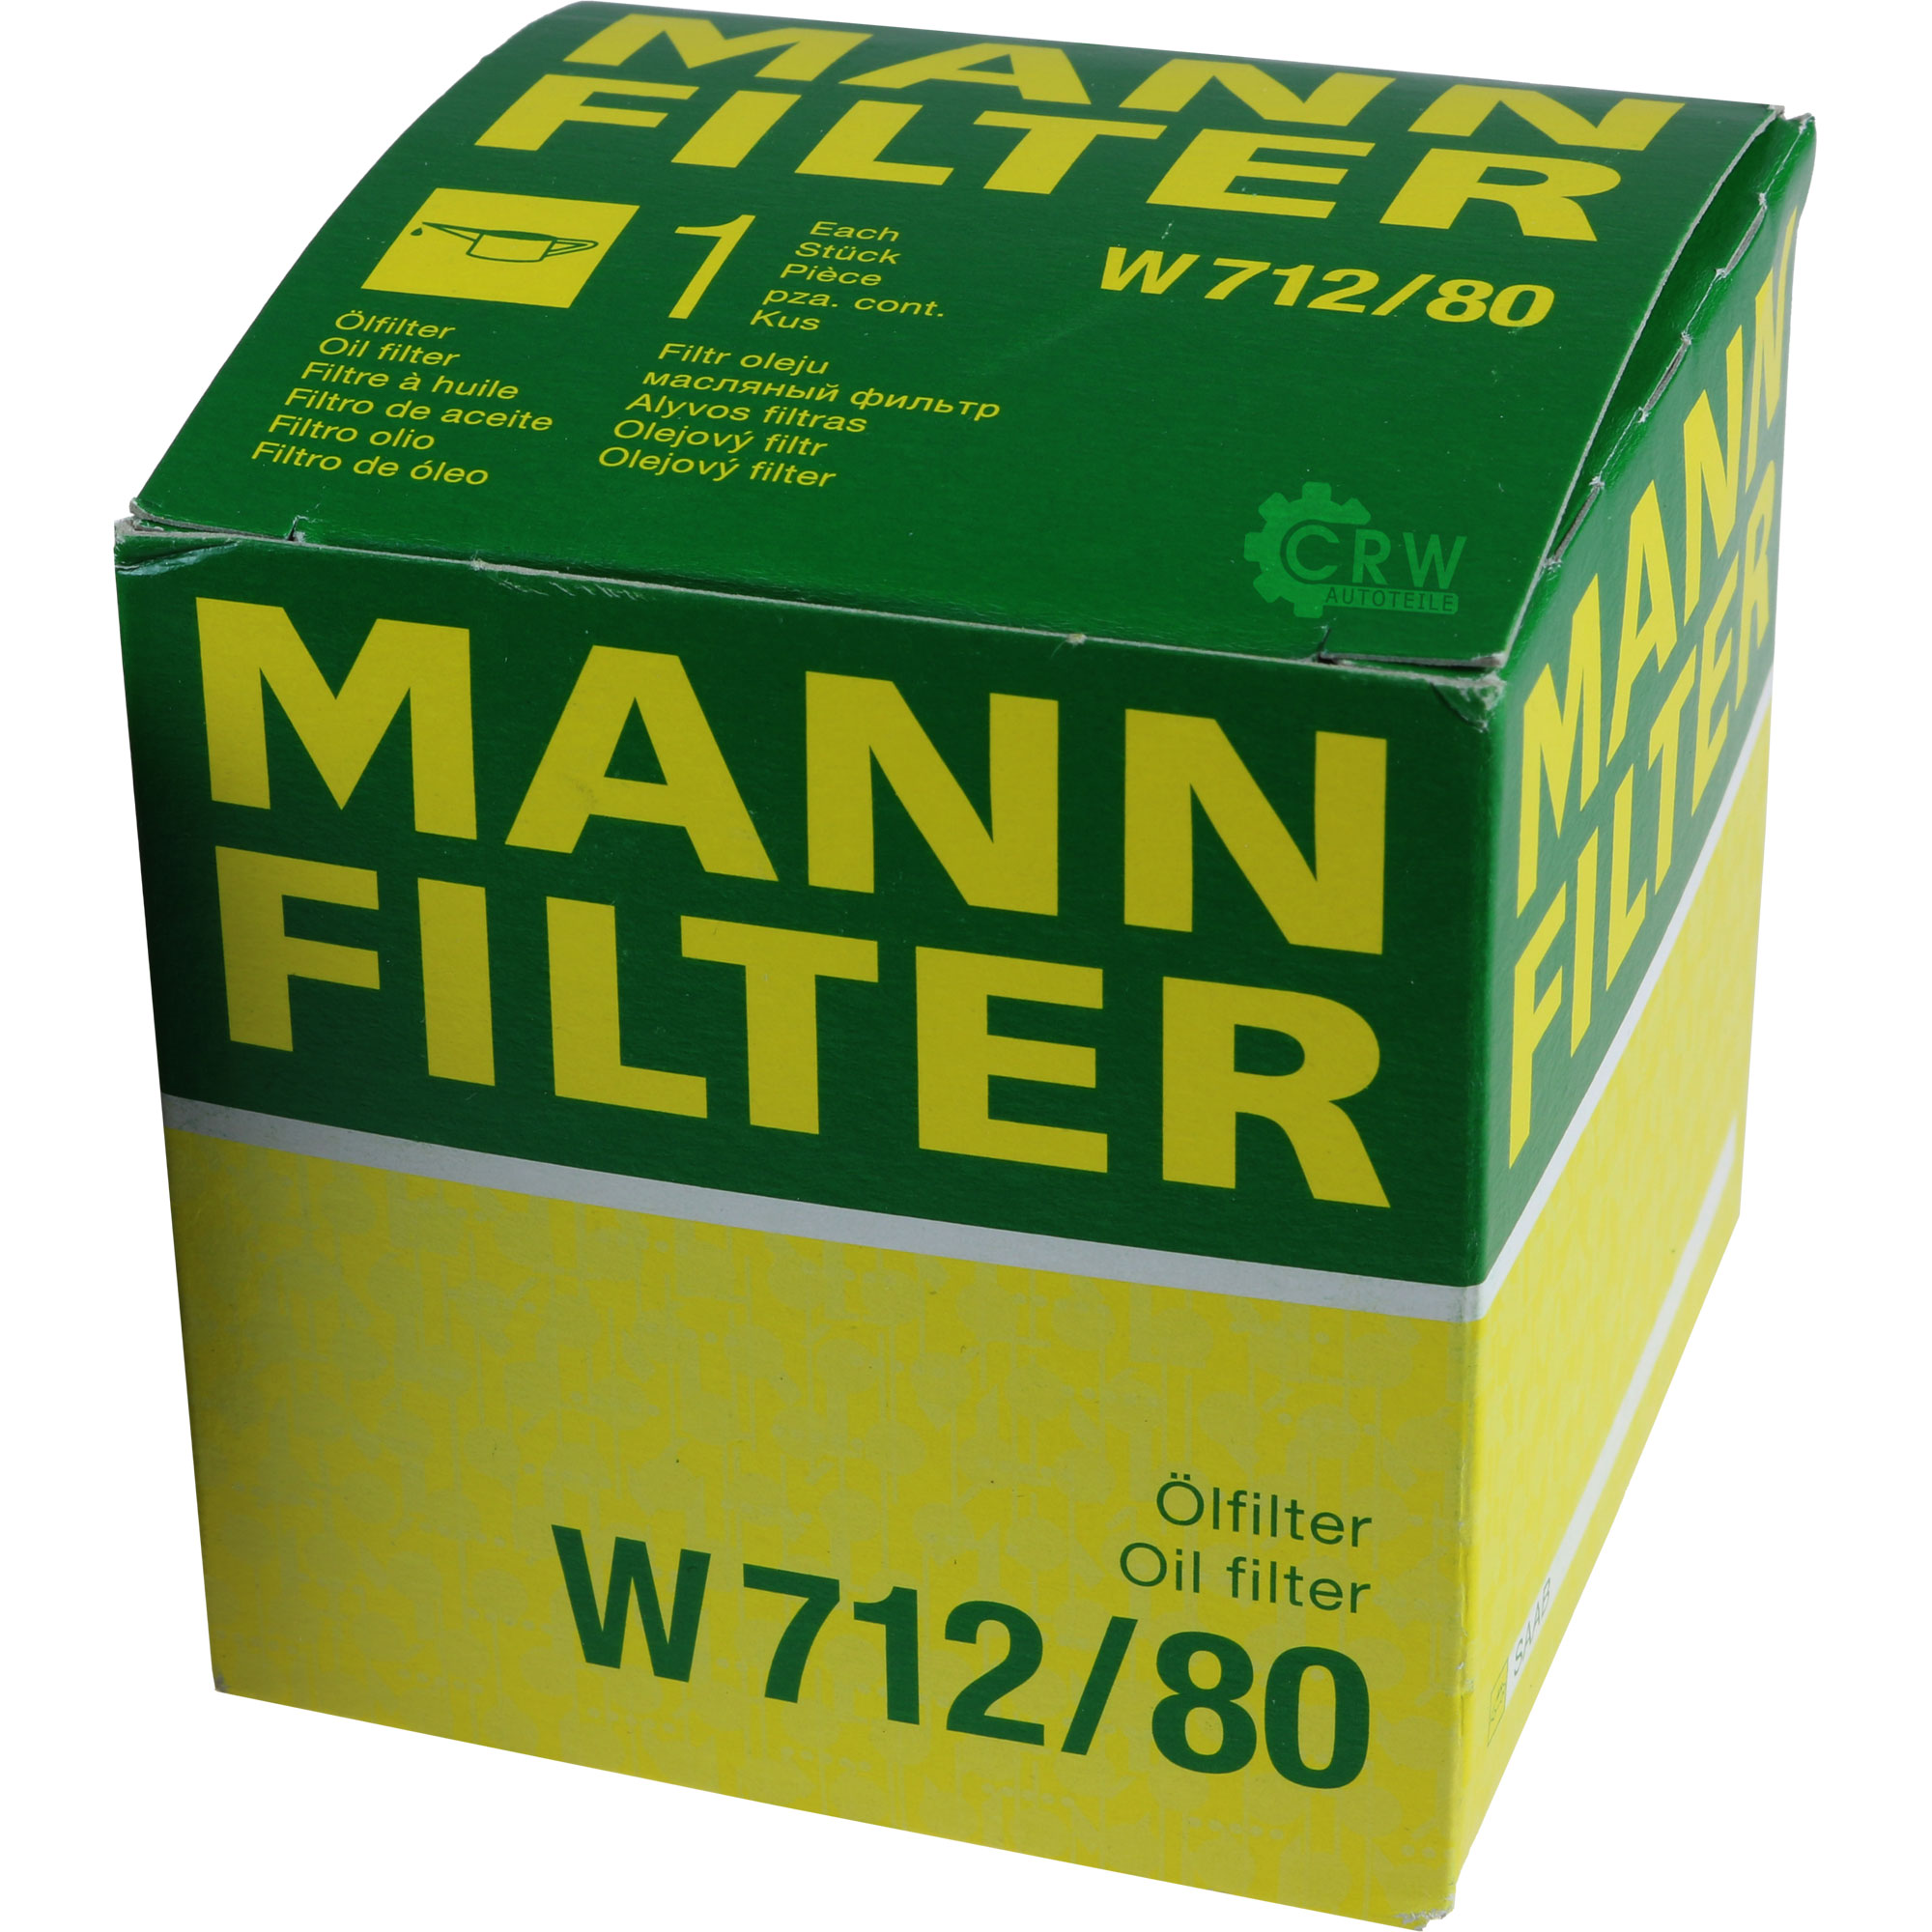 MANN-FILTER Ölfilter W 712/80 Oil Filter